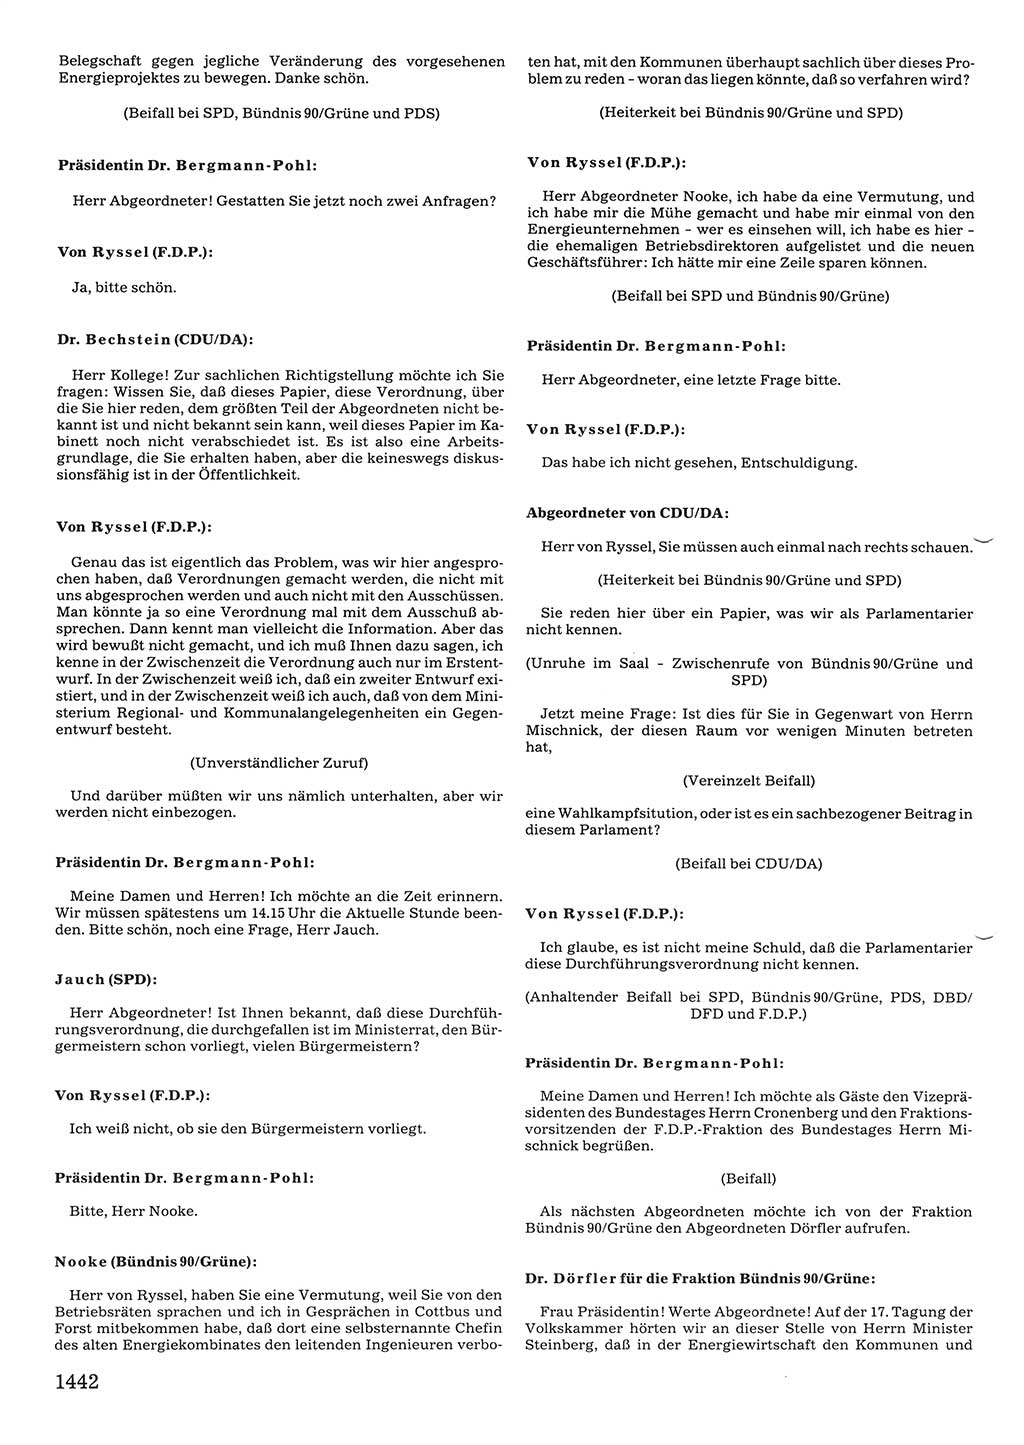 Tagungen der Volkskammer (VK) der Deutschen Demokratischen Republik (DDR), 10. Wahlperiode 1990, Seite 1442 (VK. DDR 10. WP. 1990, Prot. Tg. 1-38, 5.4.-2.10.1990, S. 1442)